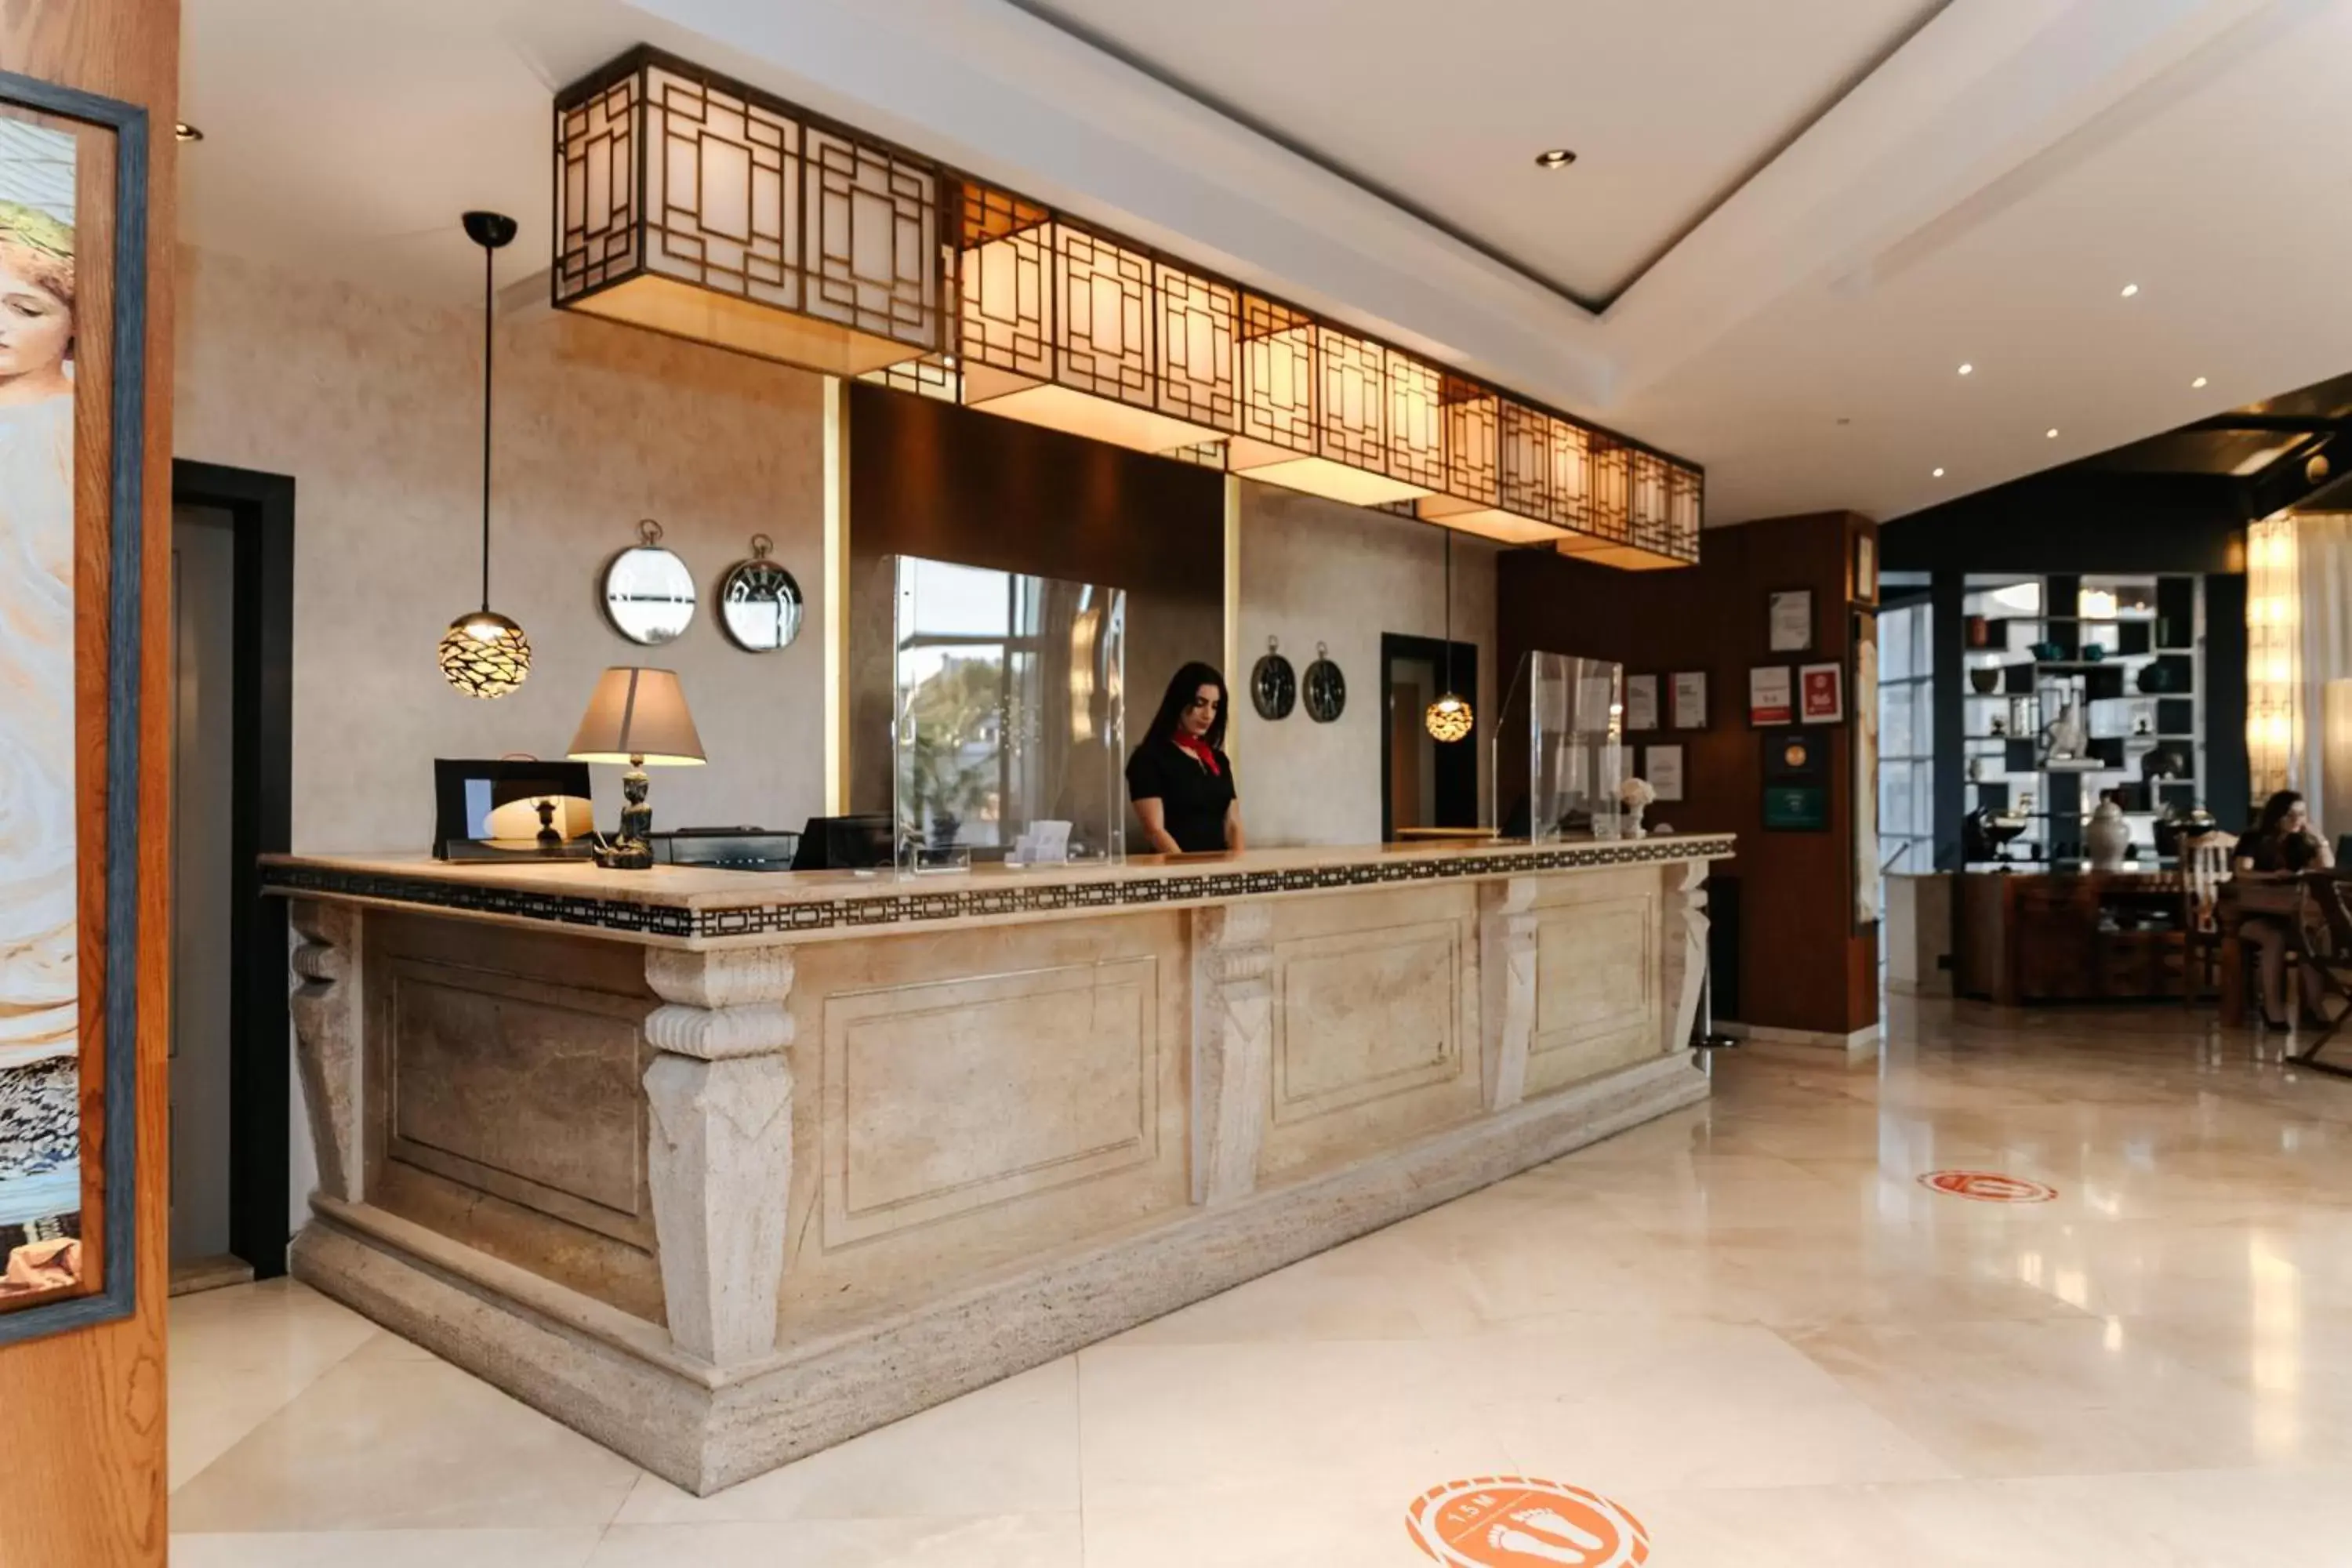 Lobby or reception, Lobby/Reception in Bodrium Hotel & Spa